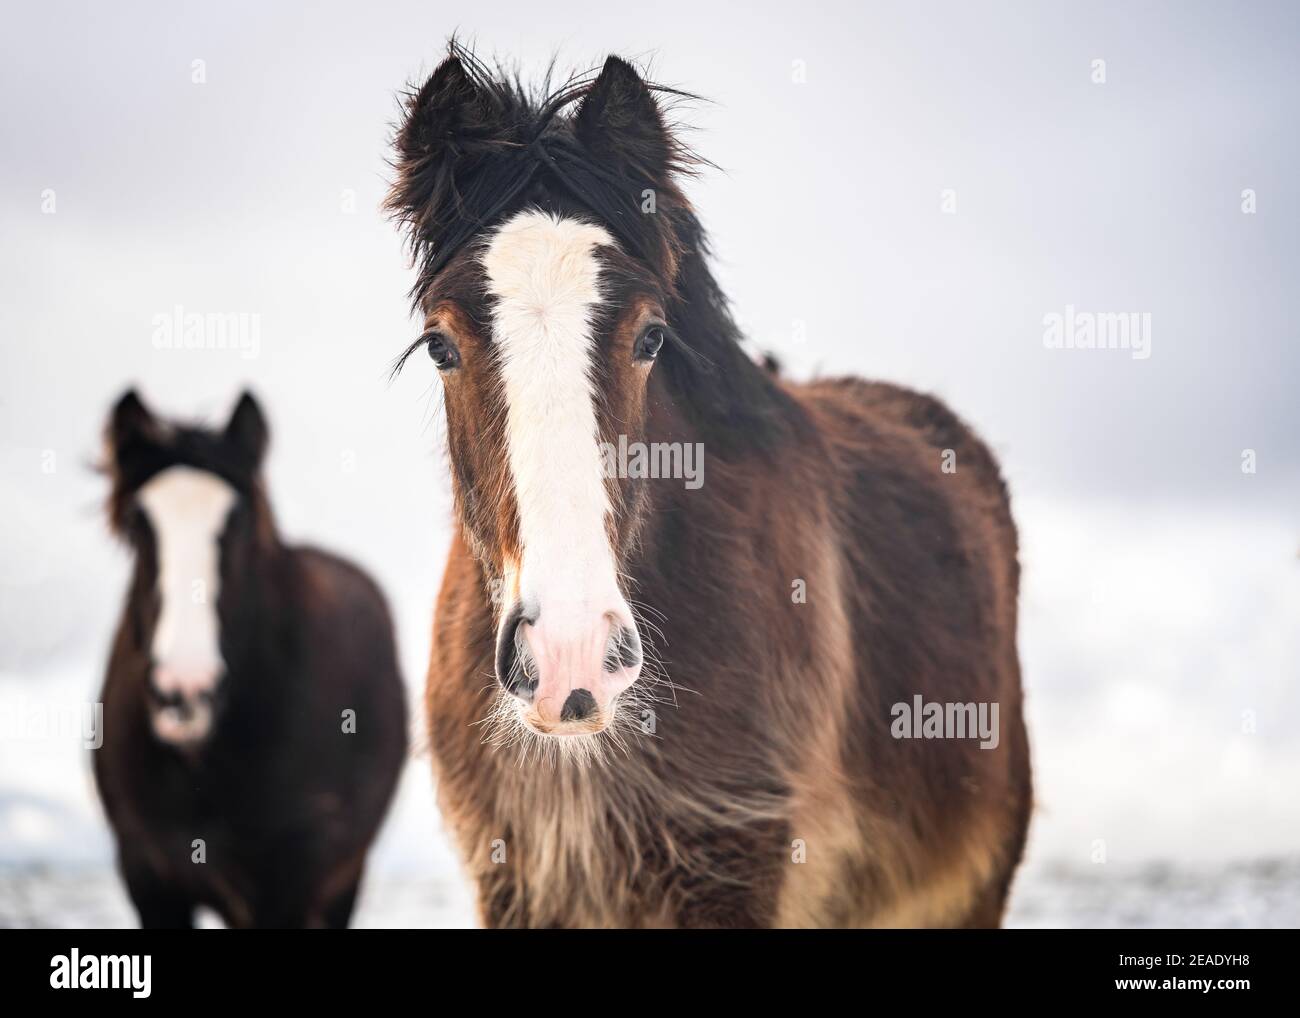 Bella grande irlandese zingara cob cavalli giovani nemici roaming selvaggio nella neve pesante sul terreno che cammina verso la telecamera per il freddo campo invernale innevato Foto Stock